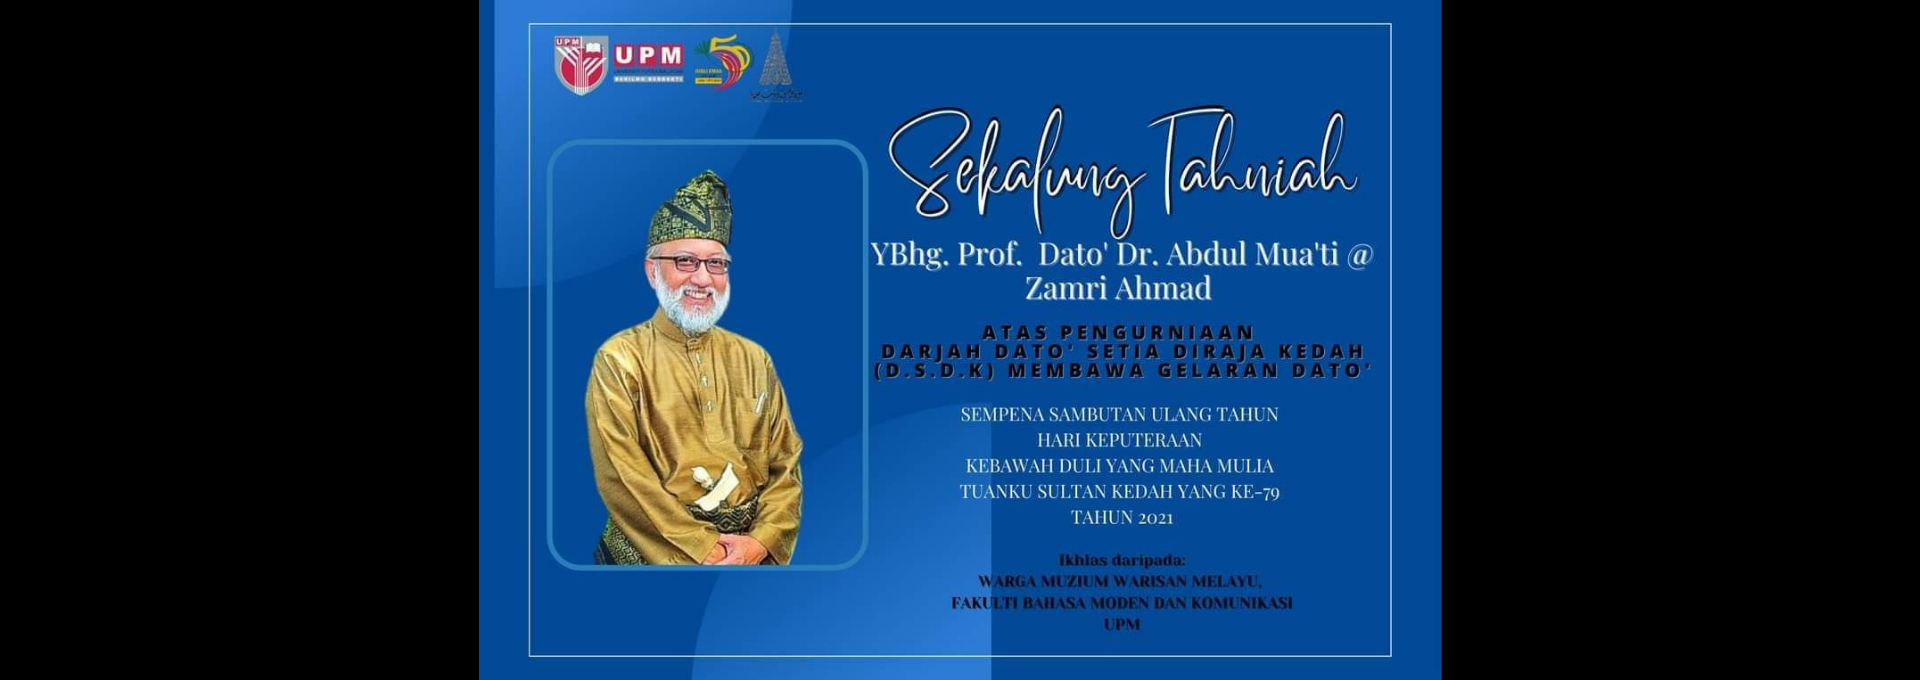 YBhg. Prof. Dato Dr. Abdul Muati